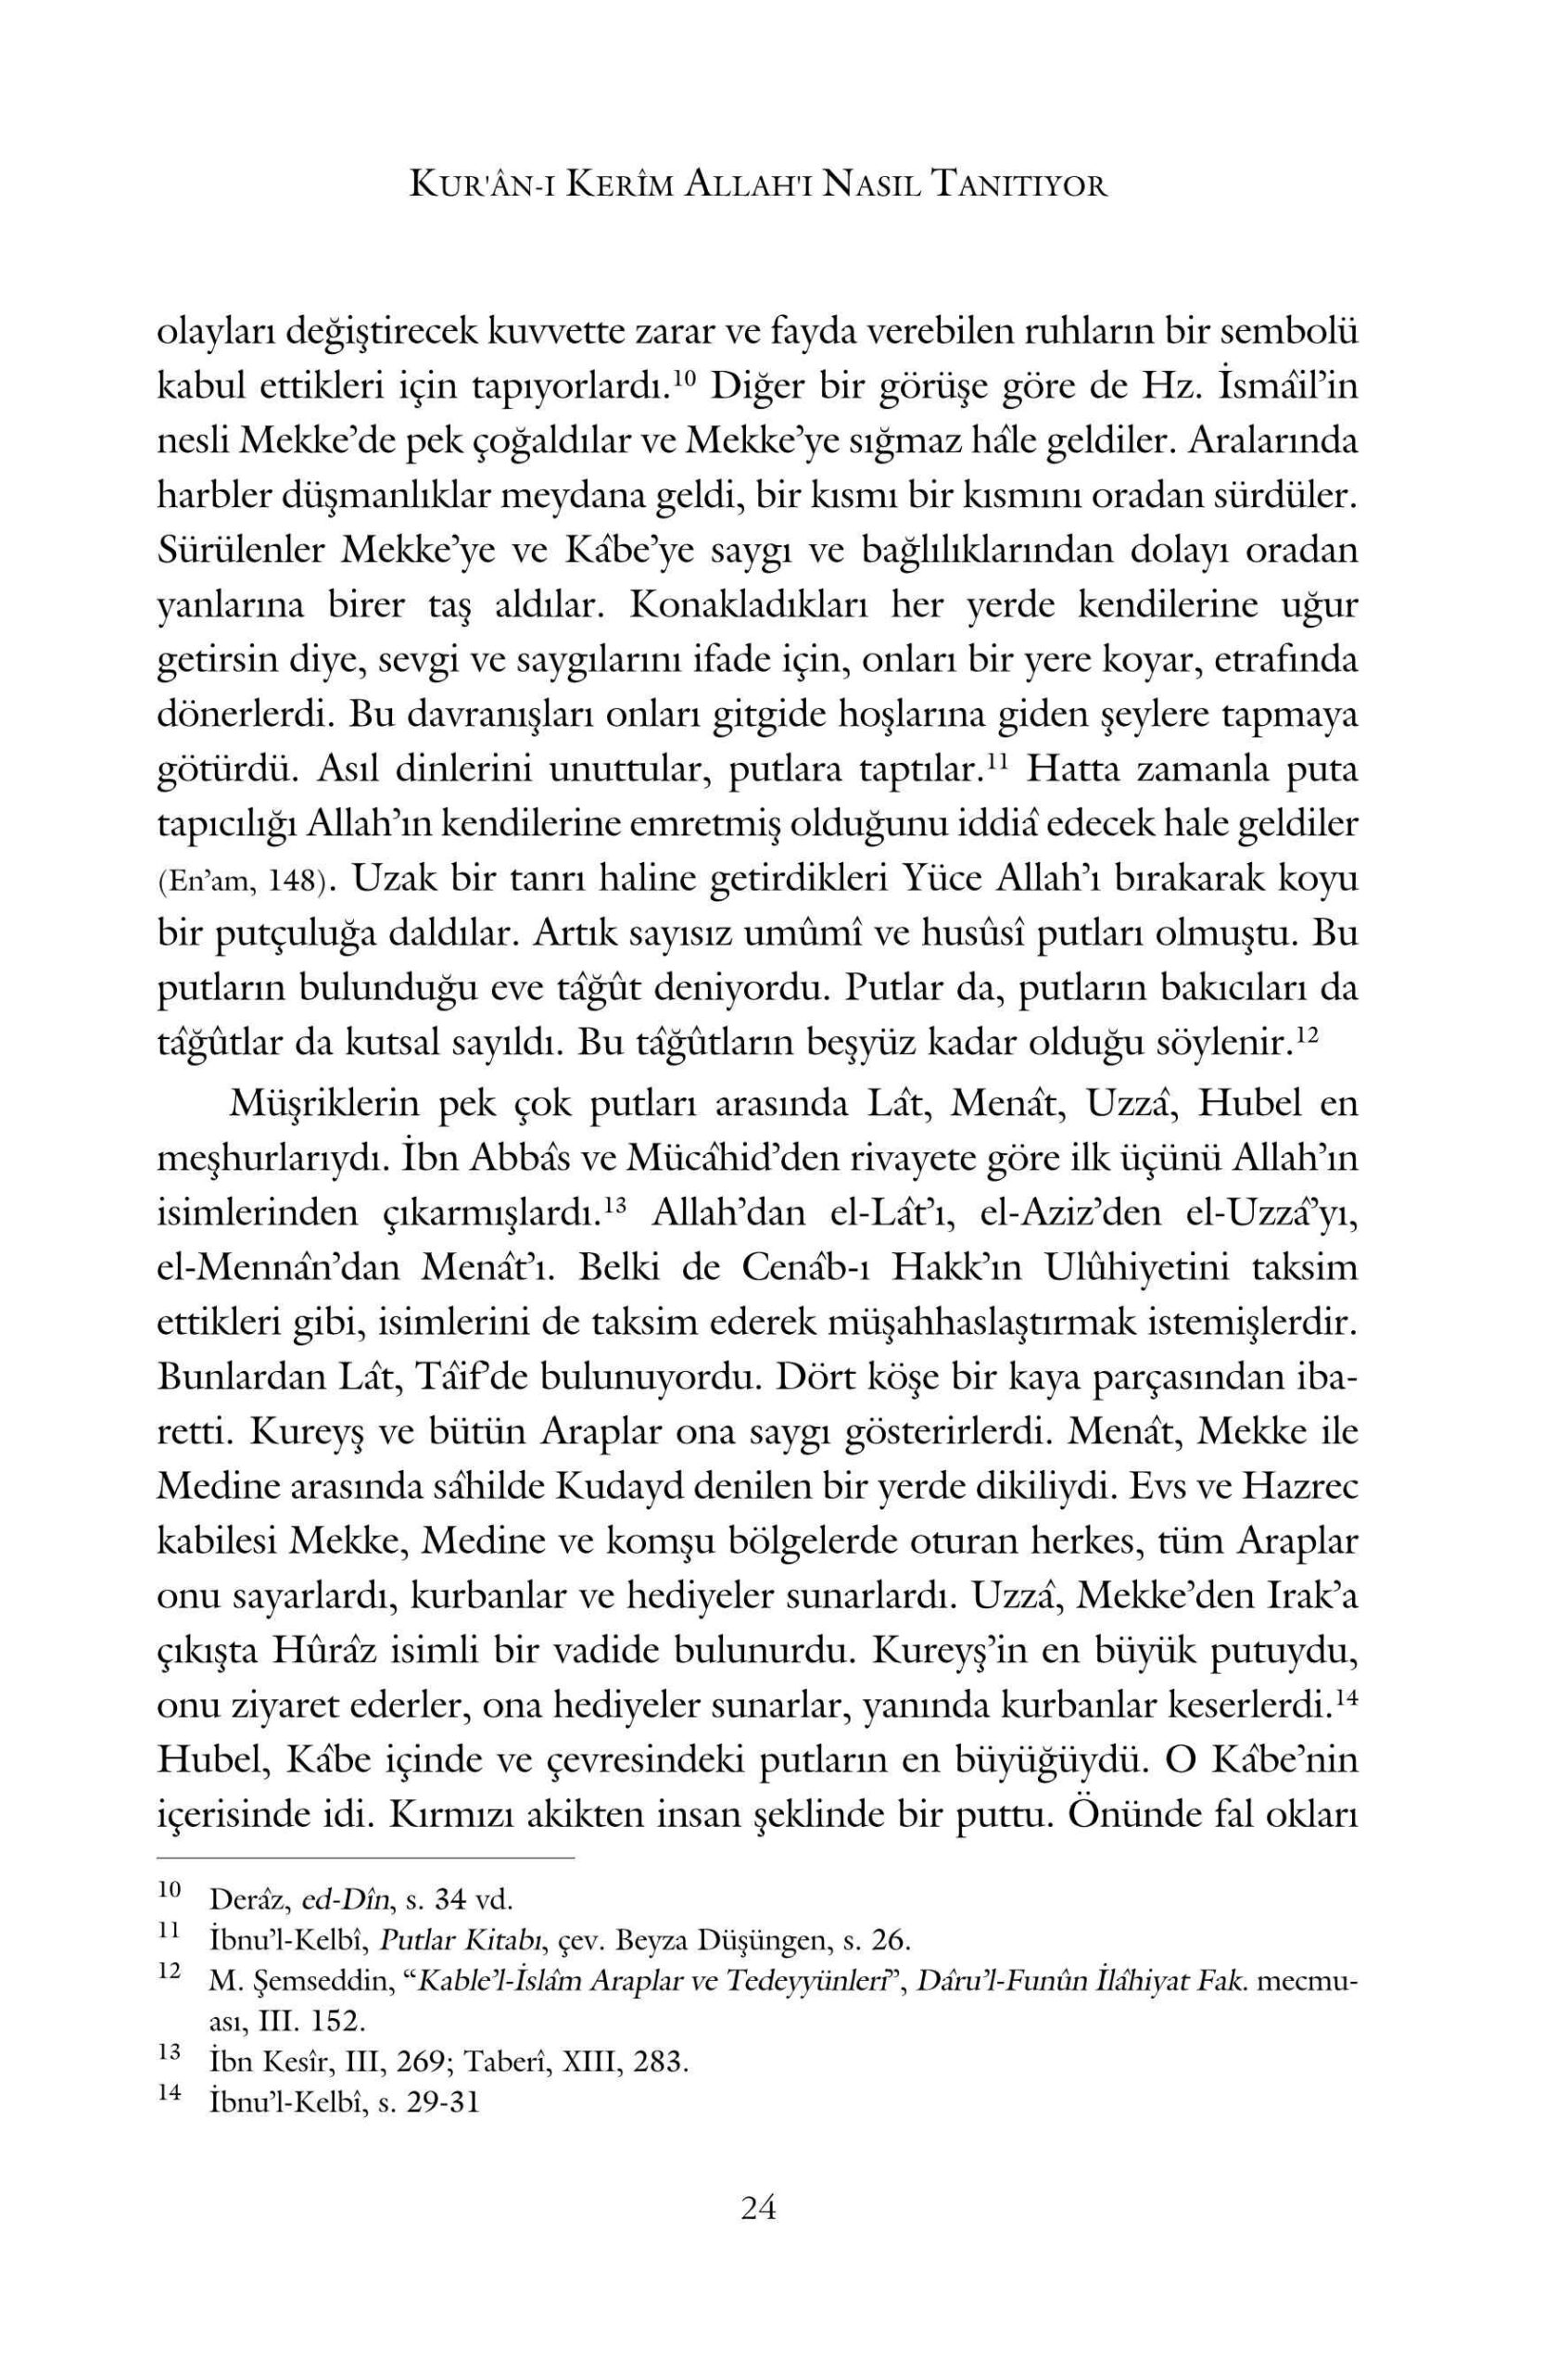 Veli Uluturk - Kurani Kerim Allahi Nasil Tanitiyor - IsikAkademiY.pdf, 321-Sayfa 